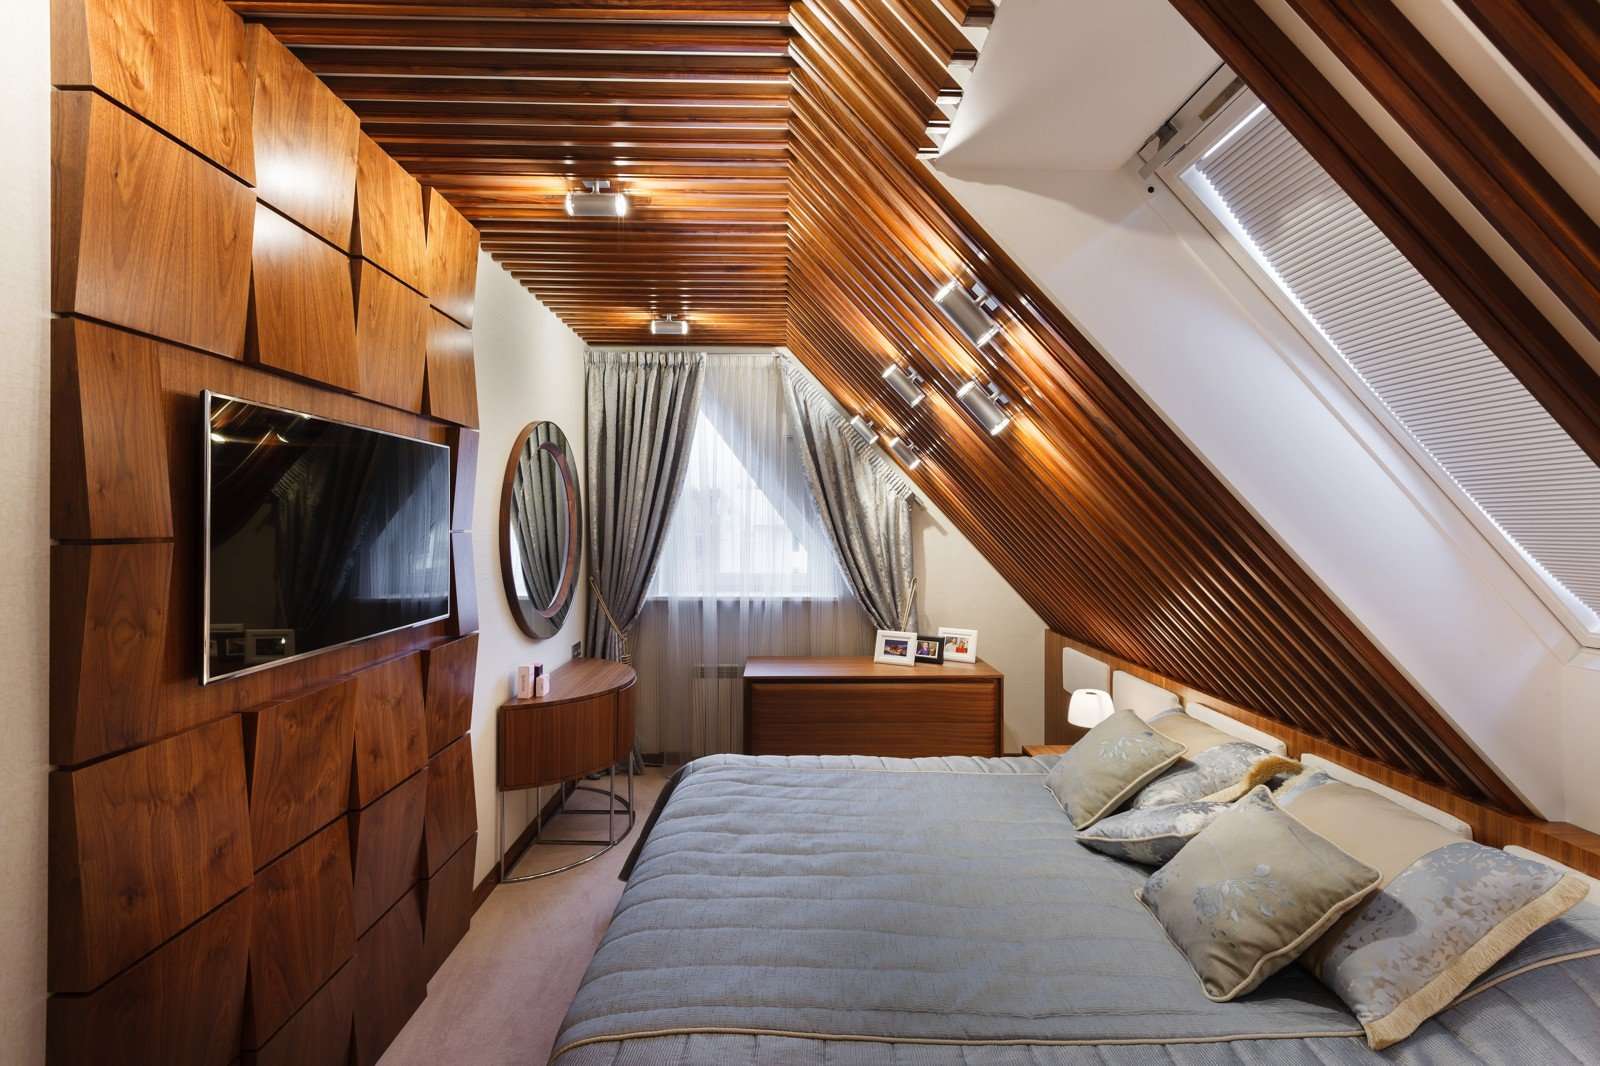 Односкатная мансарда. Спальня на мансарде. Деревянная мансарда интерьер. Спальня в деревянной мансарде. Спальня на мансардном этаже.